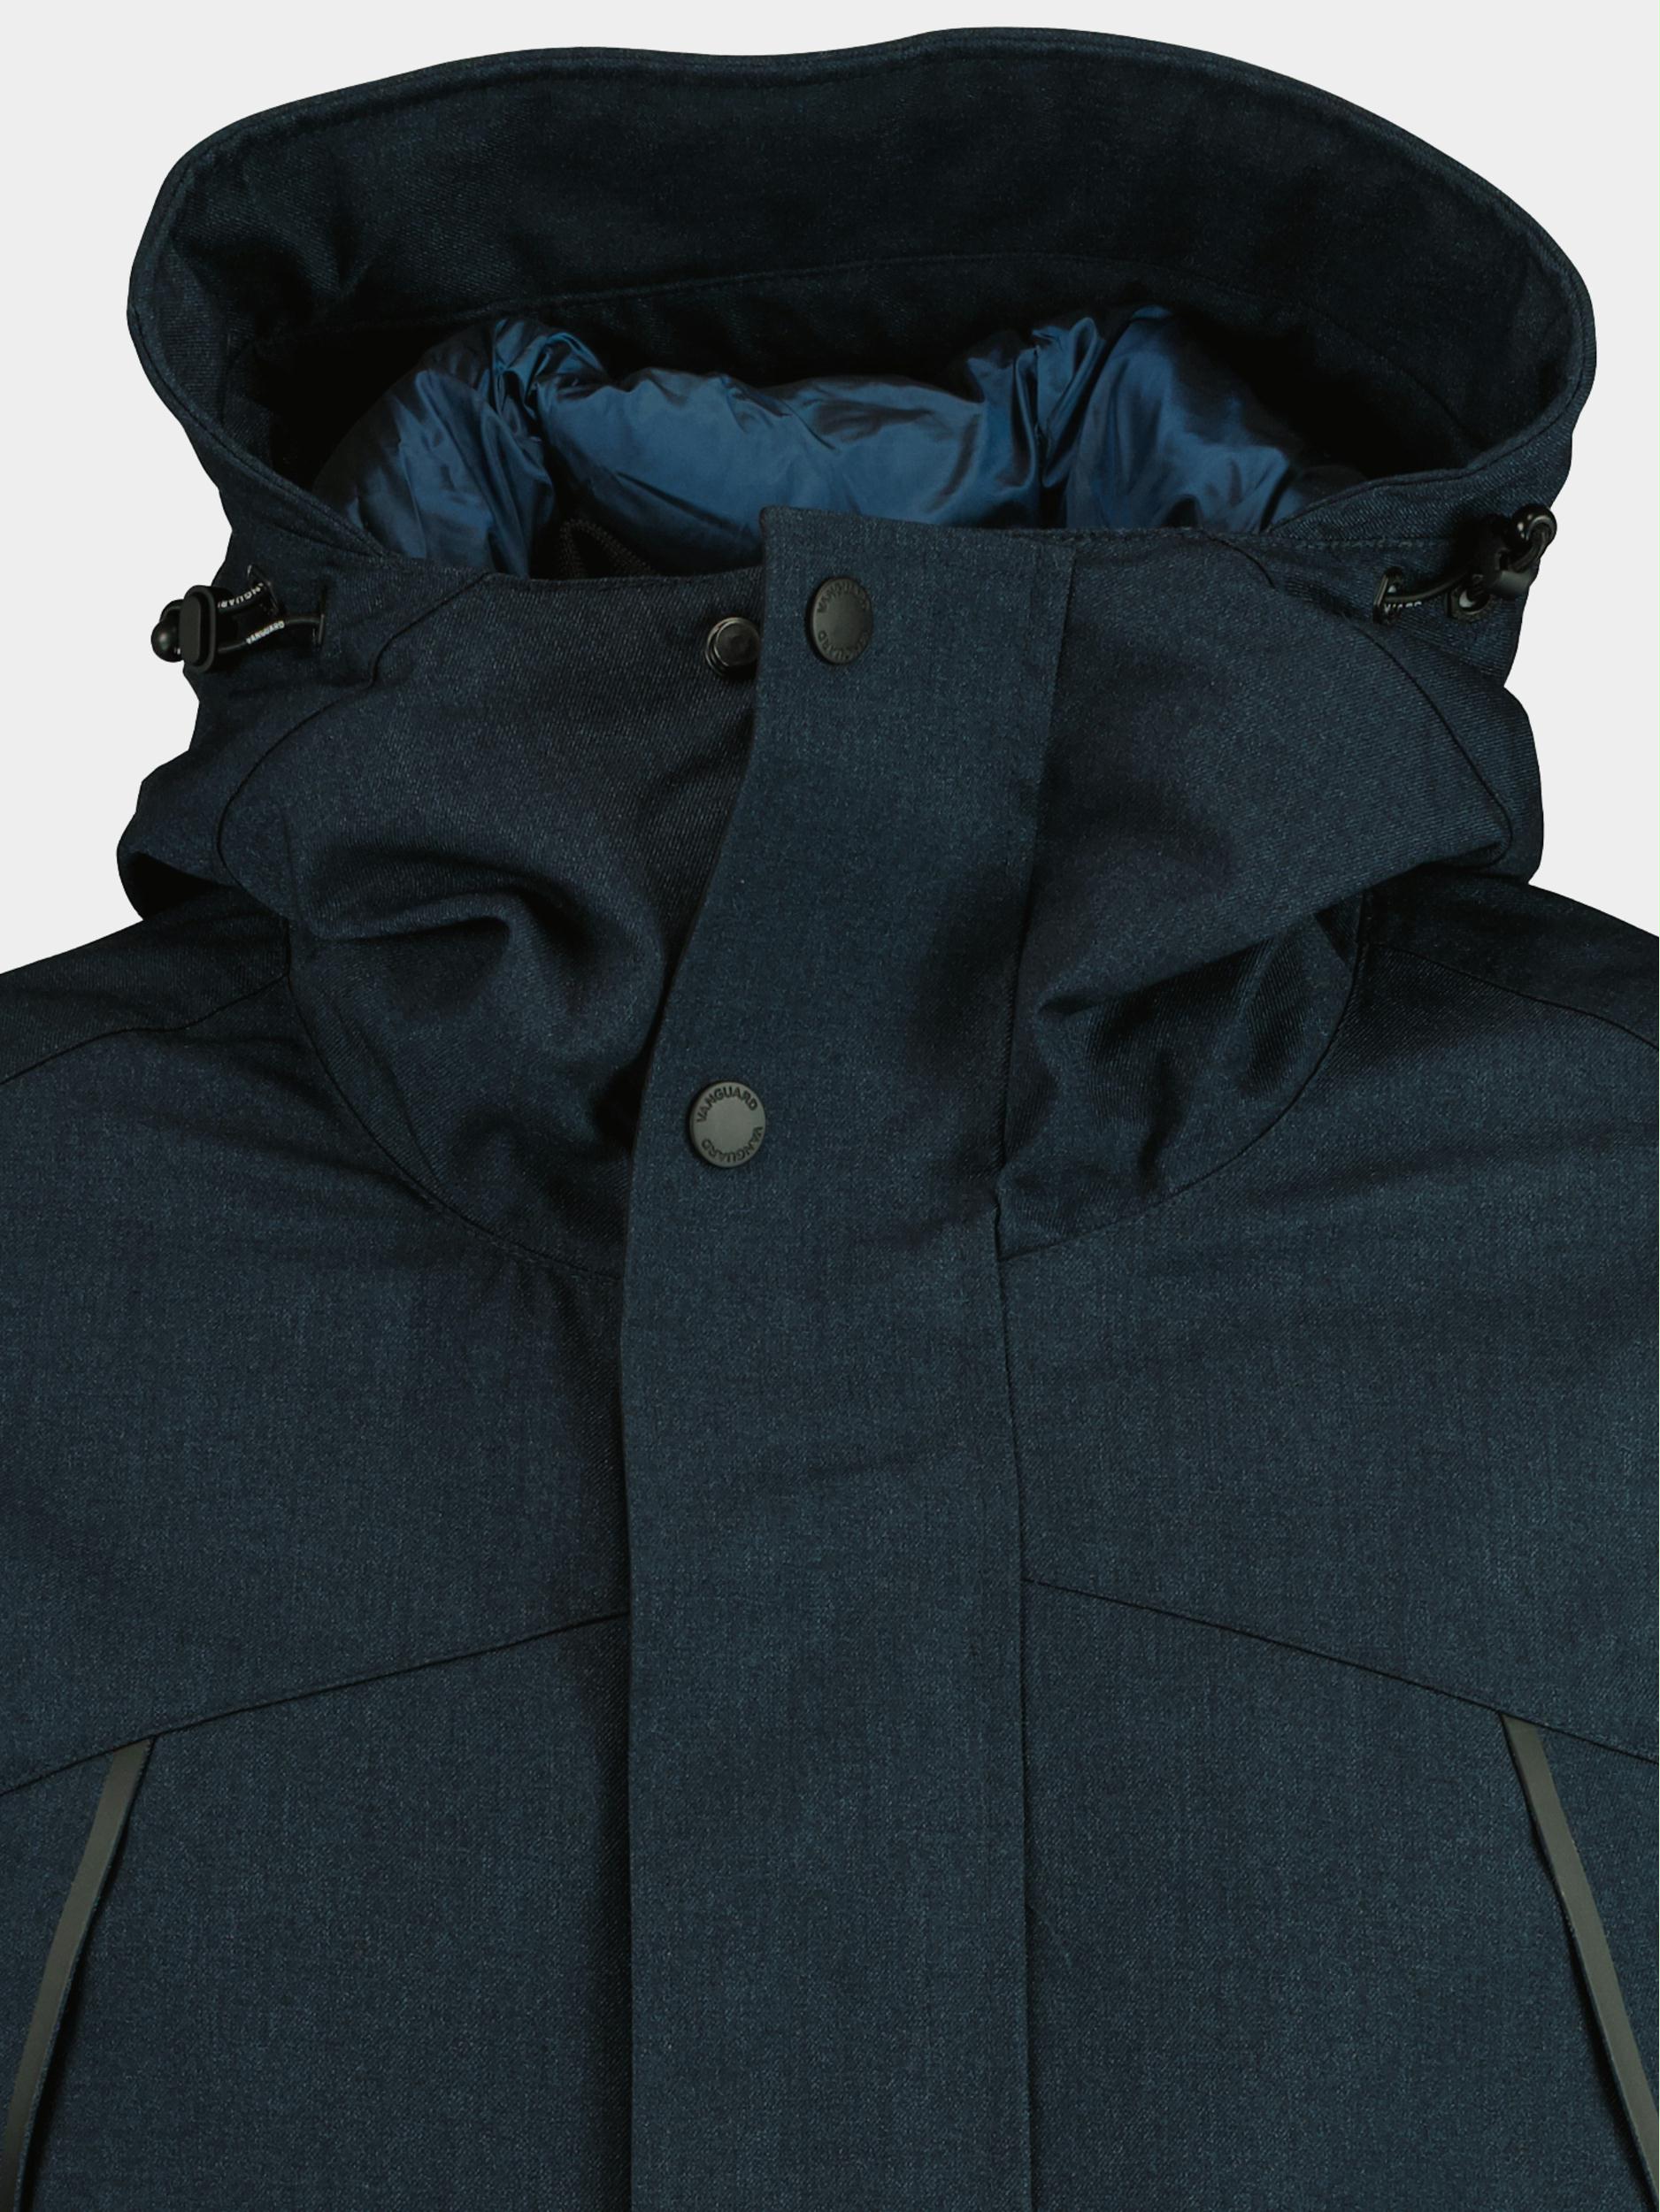 Vanguard Winterjack Blauw Parka jacket MELANGE TWILL WH VJA2209177/5281